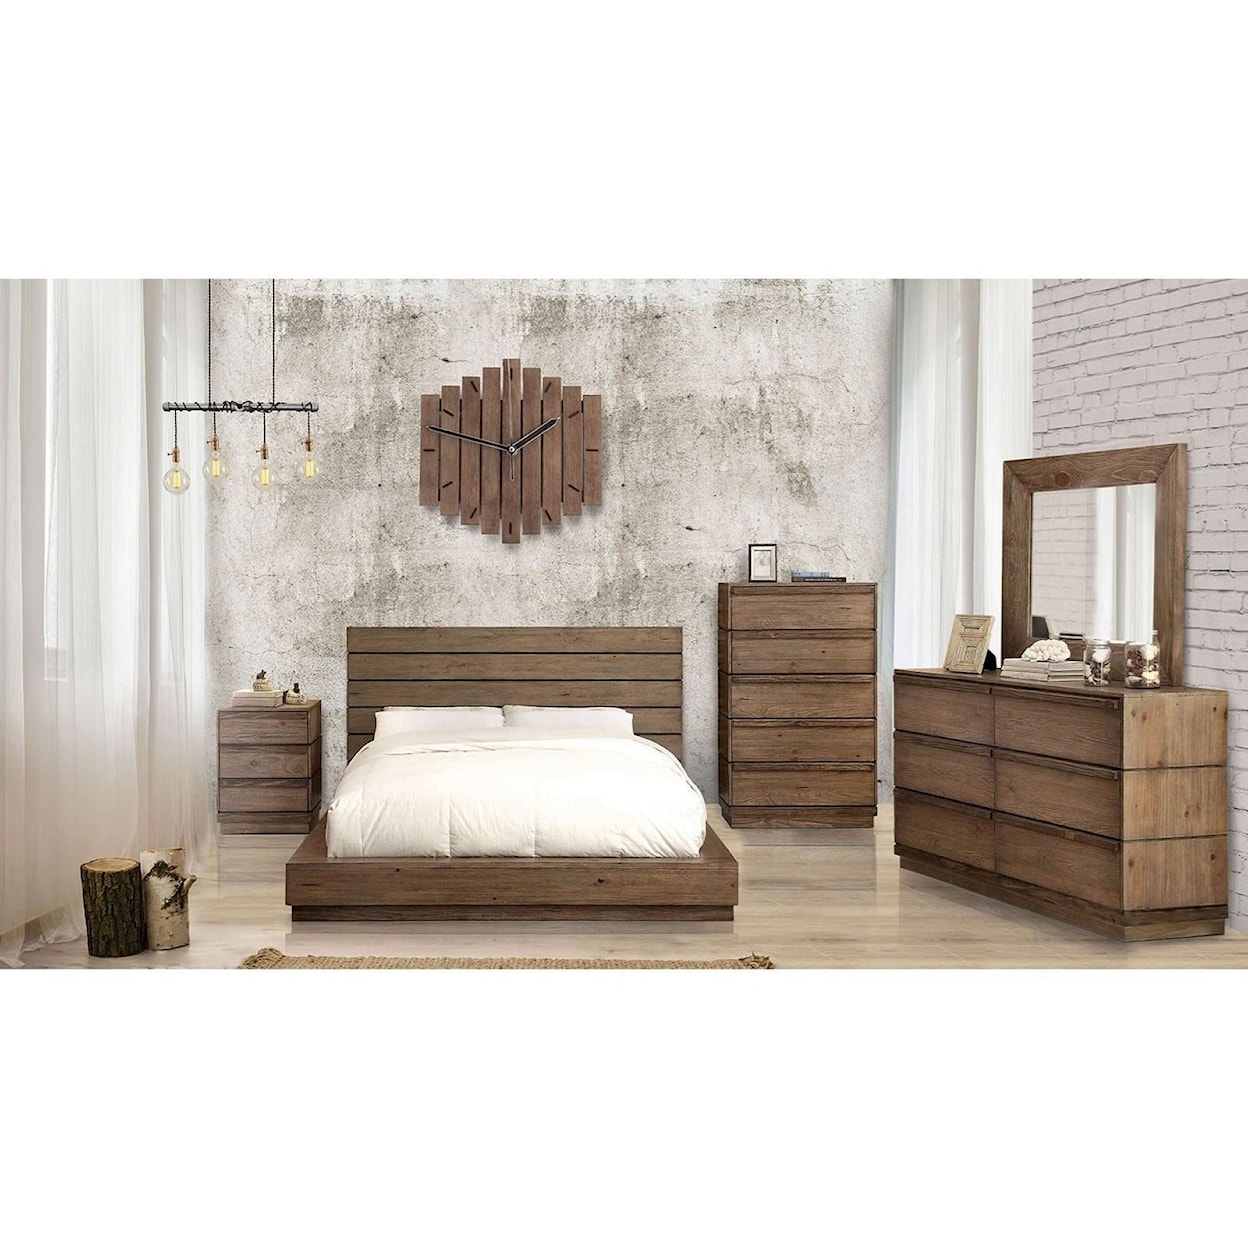 Furniture of America Coimbra Dresser